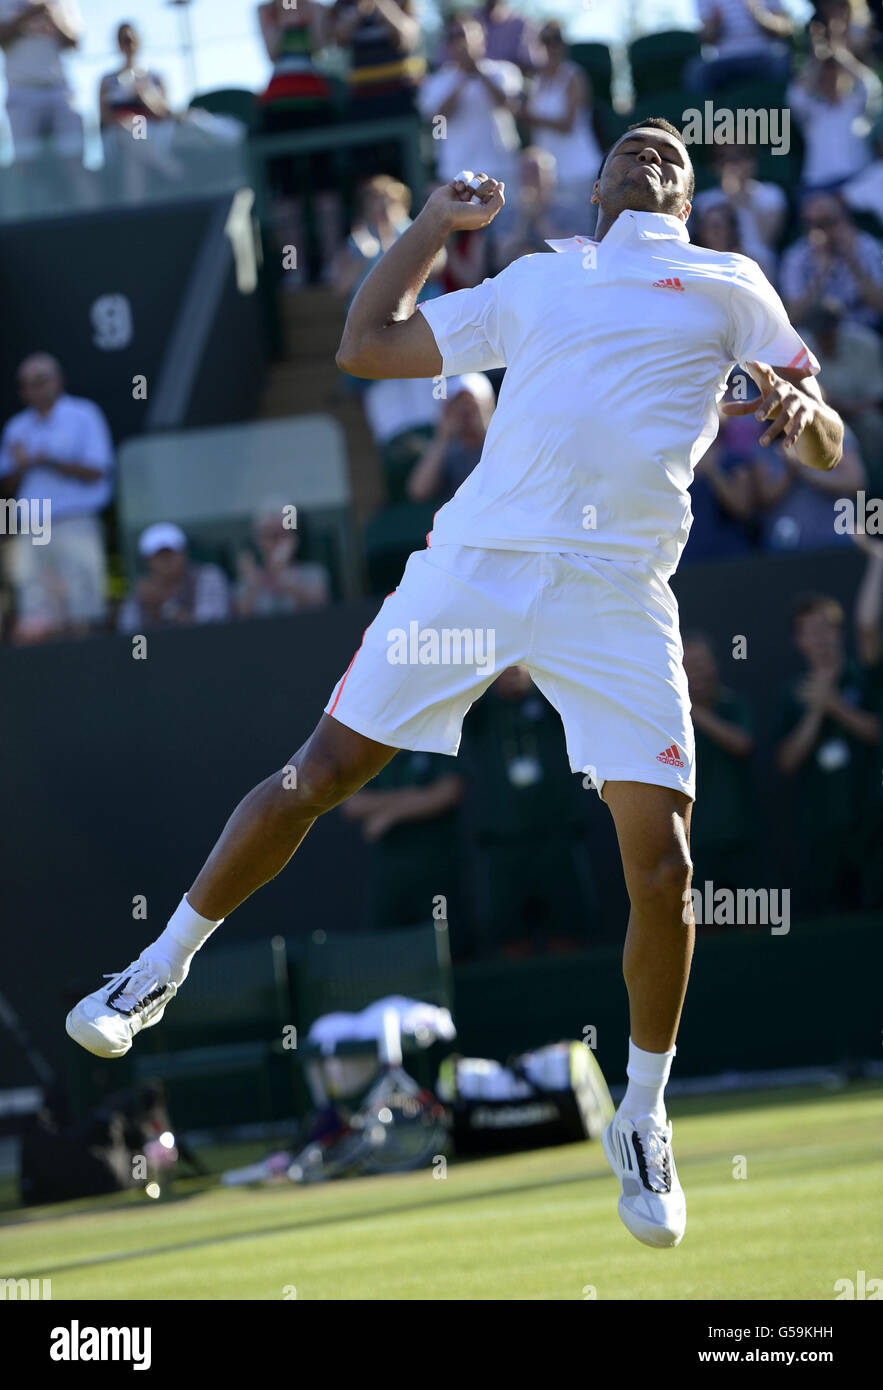 Il francese Jo-Wilfried Tsonga celebra la vittoria della sua partita contro il spagnolo Guillermo Garcia-Lopez durante il quarto giorno dei Campionati di Wimbledon 2012 presso l'All England Lawn Tennis Club di Wimbledon. Foto Stock